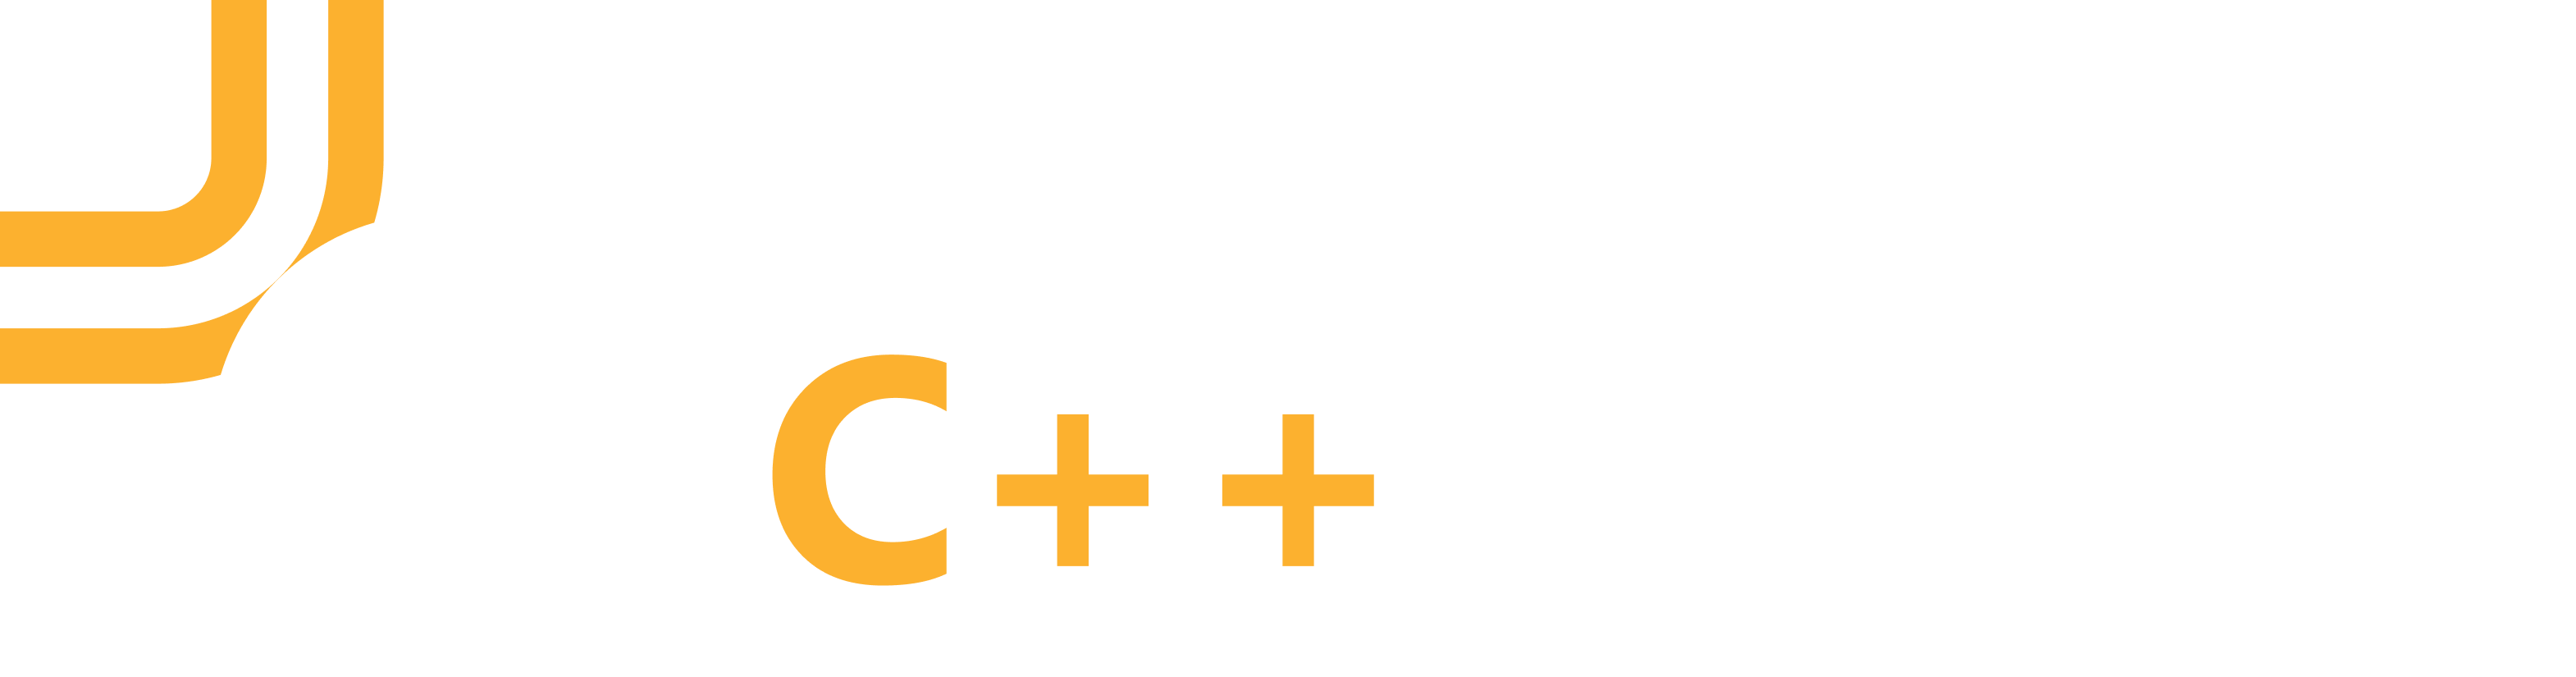 Logo czystego wirtualnego języka C++